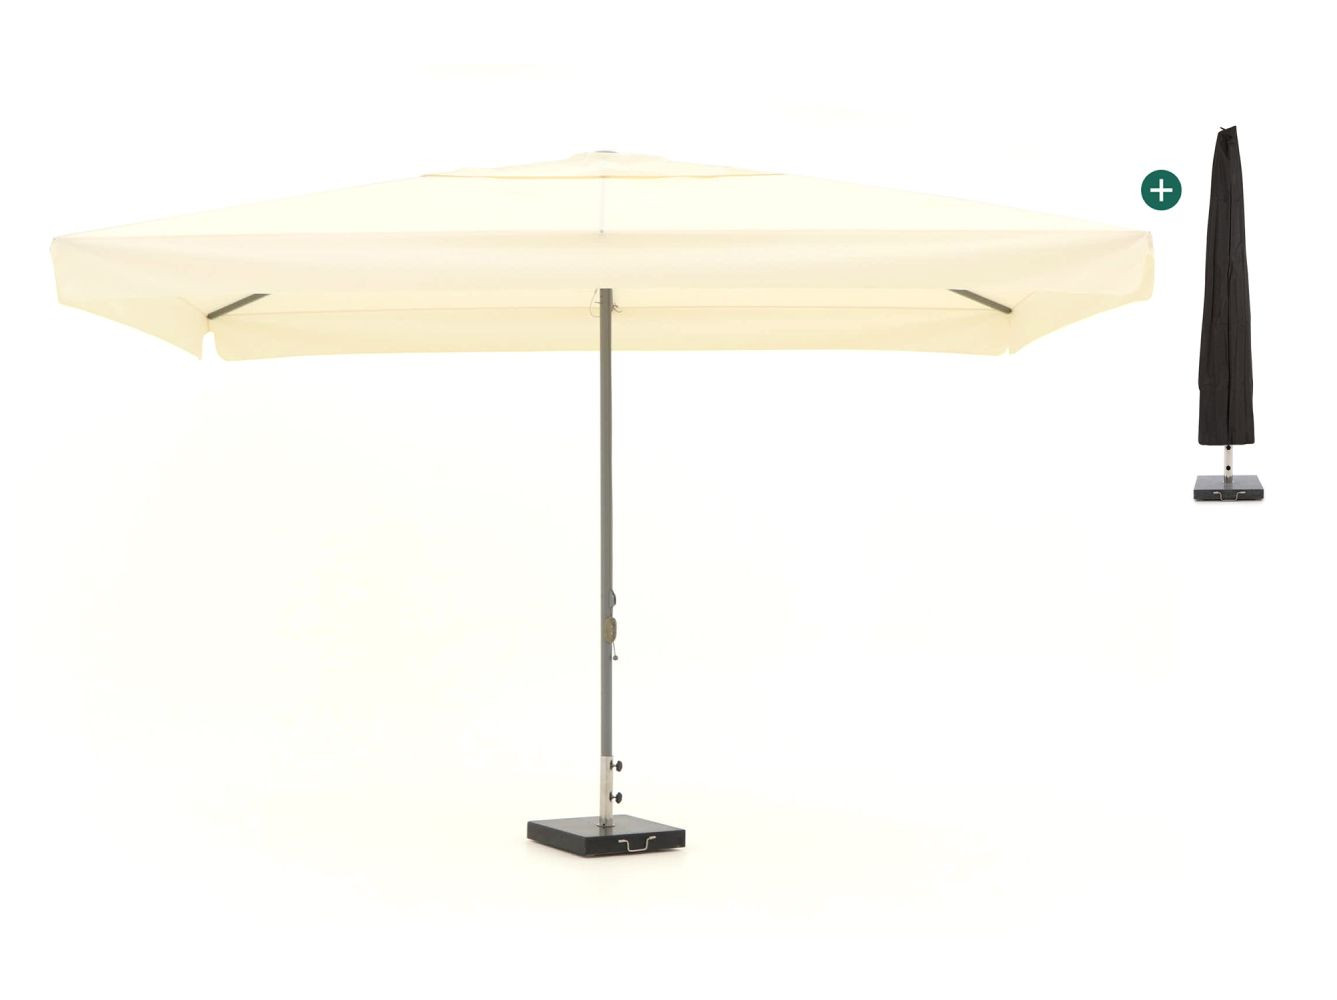 Shadowline Bonaire parasol 400x300cm - Laagste prijsgarantie!